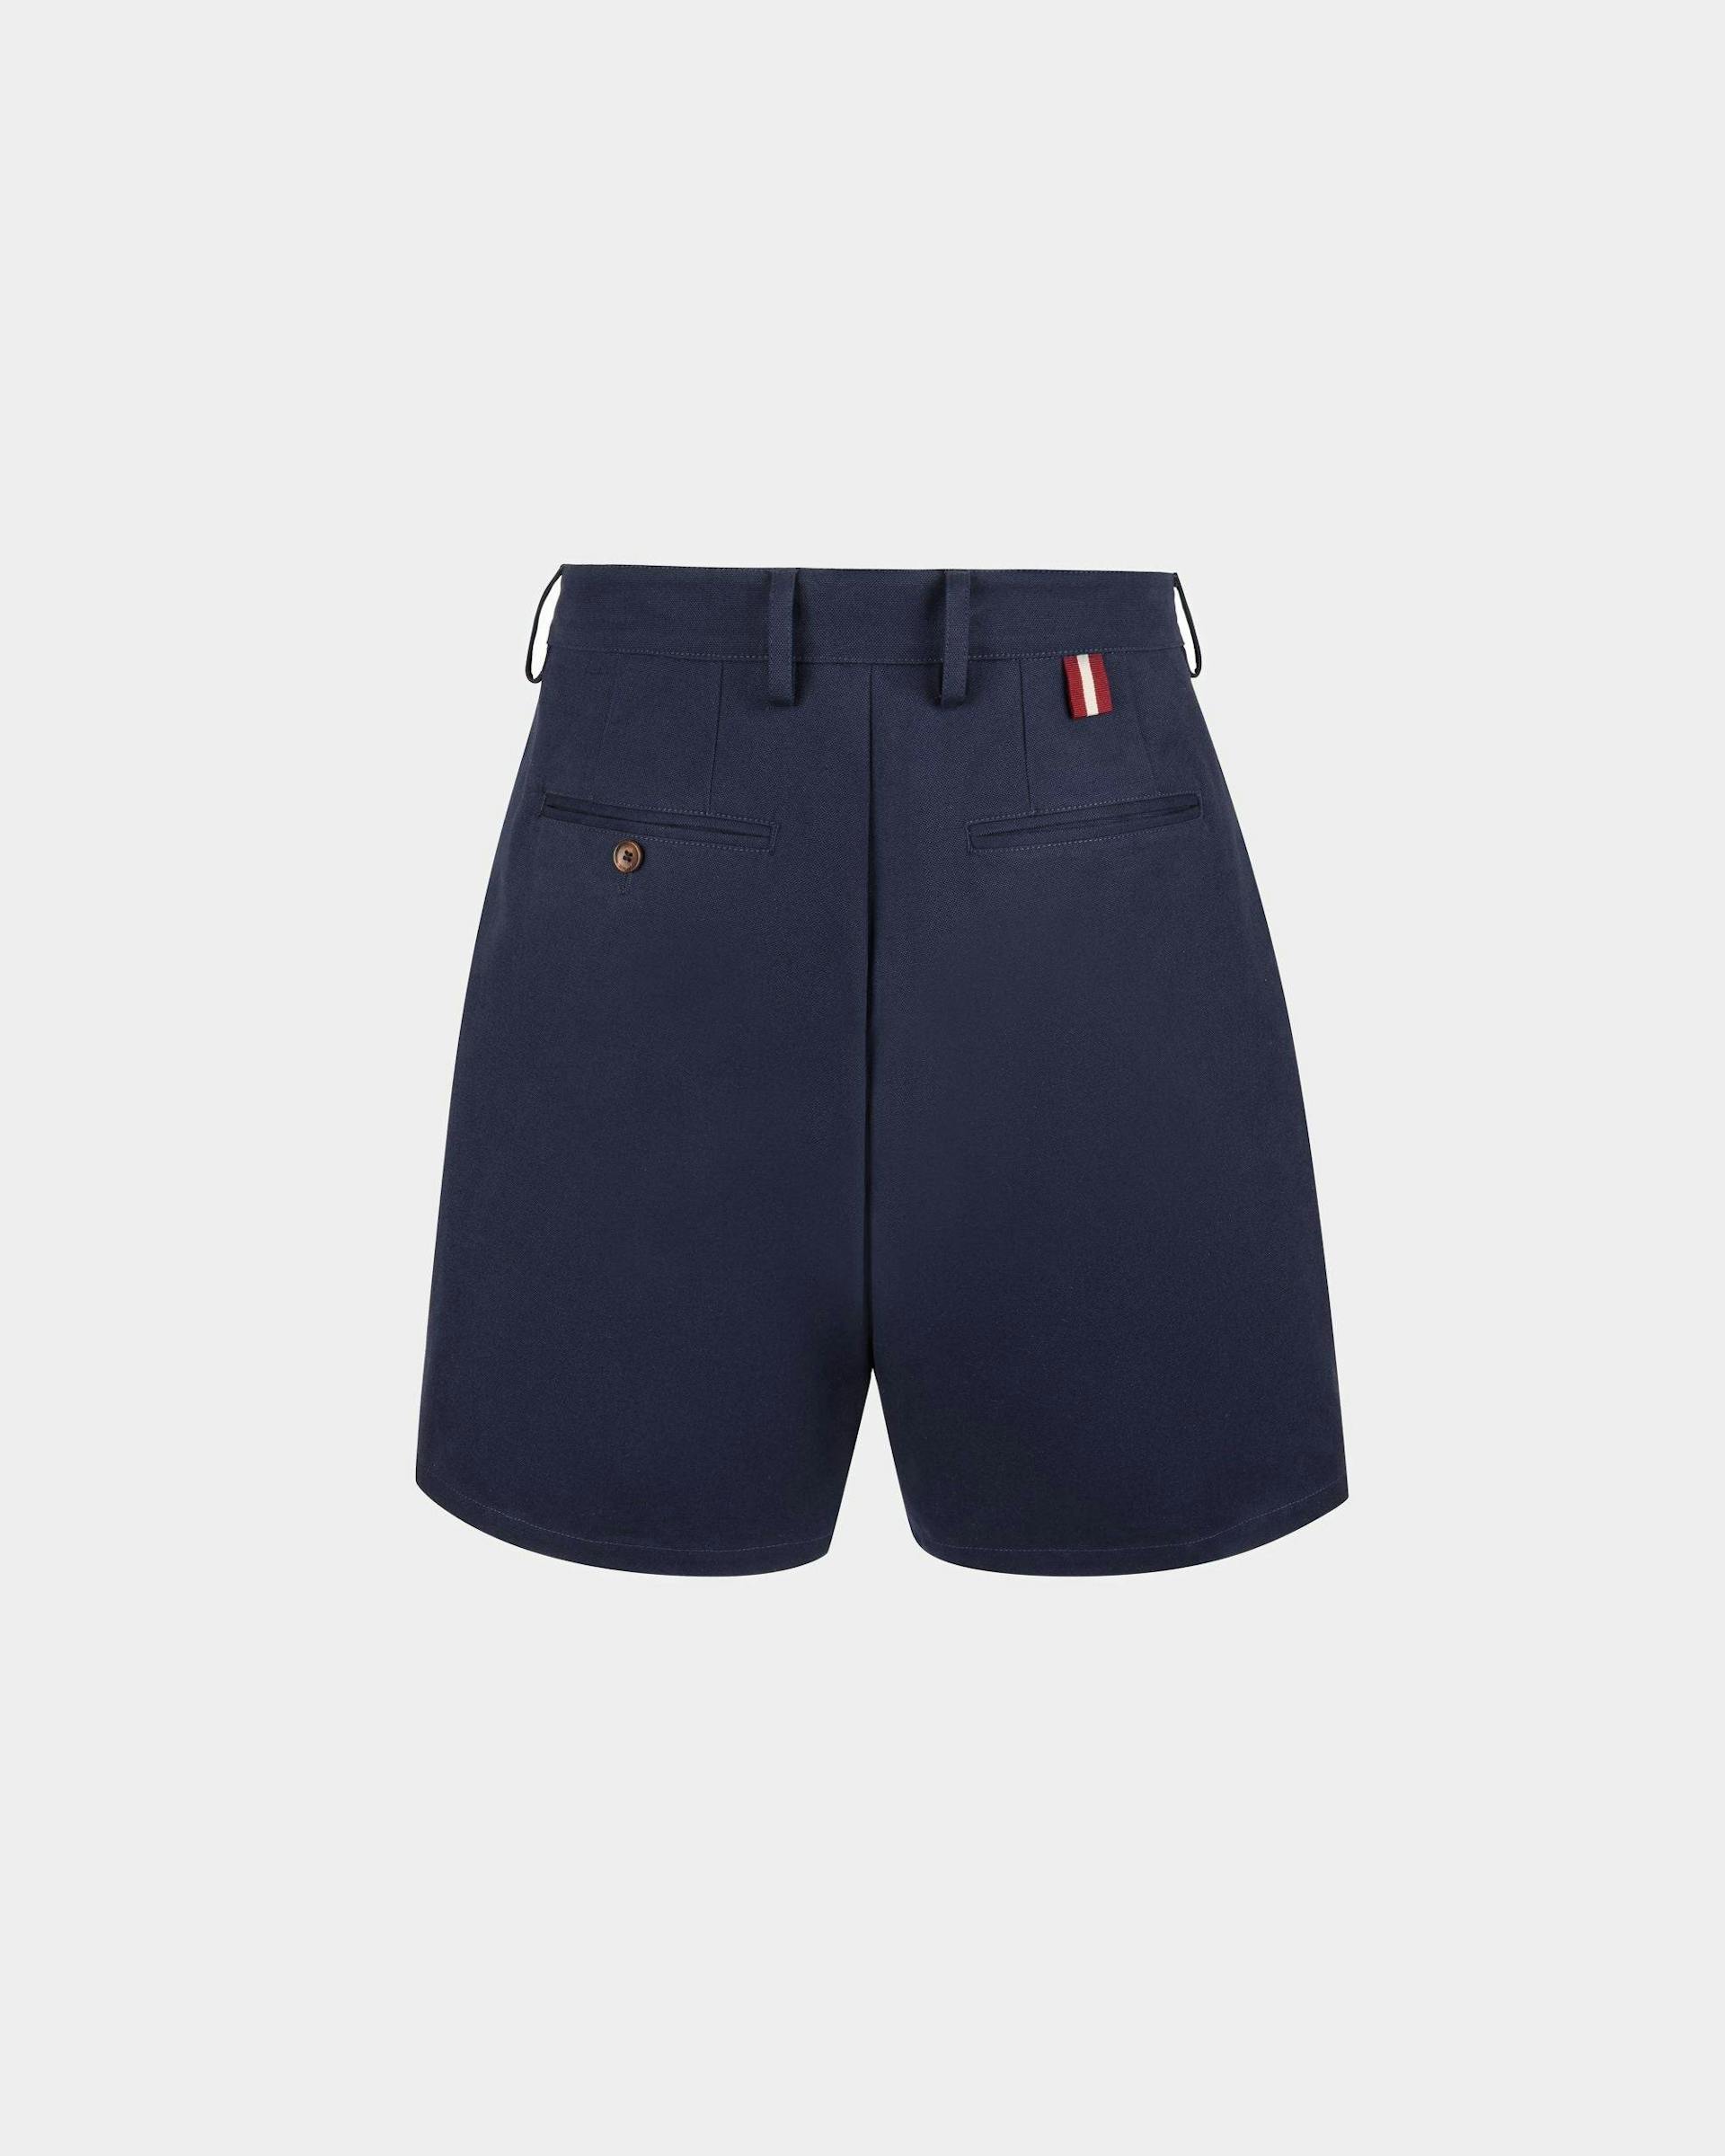 Men's Shorts in Navy Blue Cotton | Bally | Still Life Back